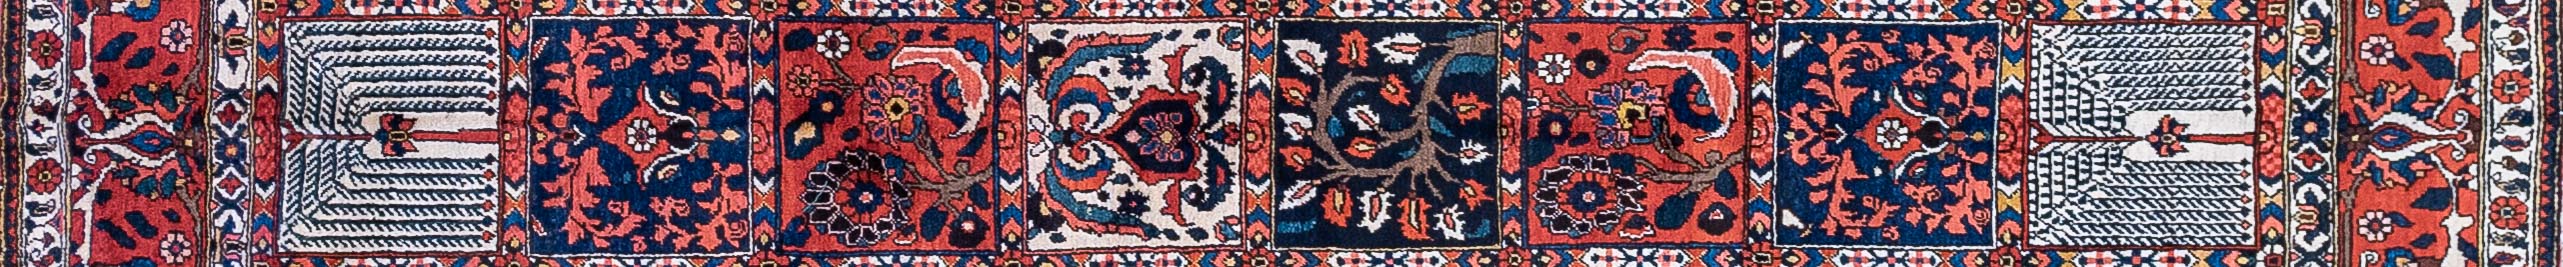 Bakhtiar Four Season Persian Carpet Rug N1Carpet Canada Montreal Tapis Persan 3450